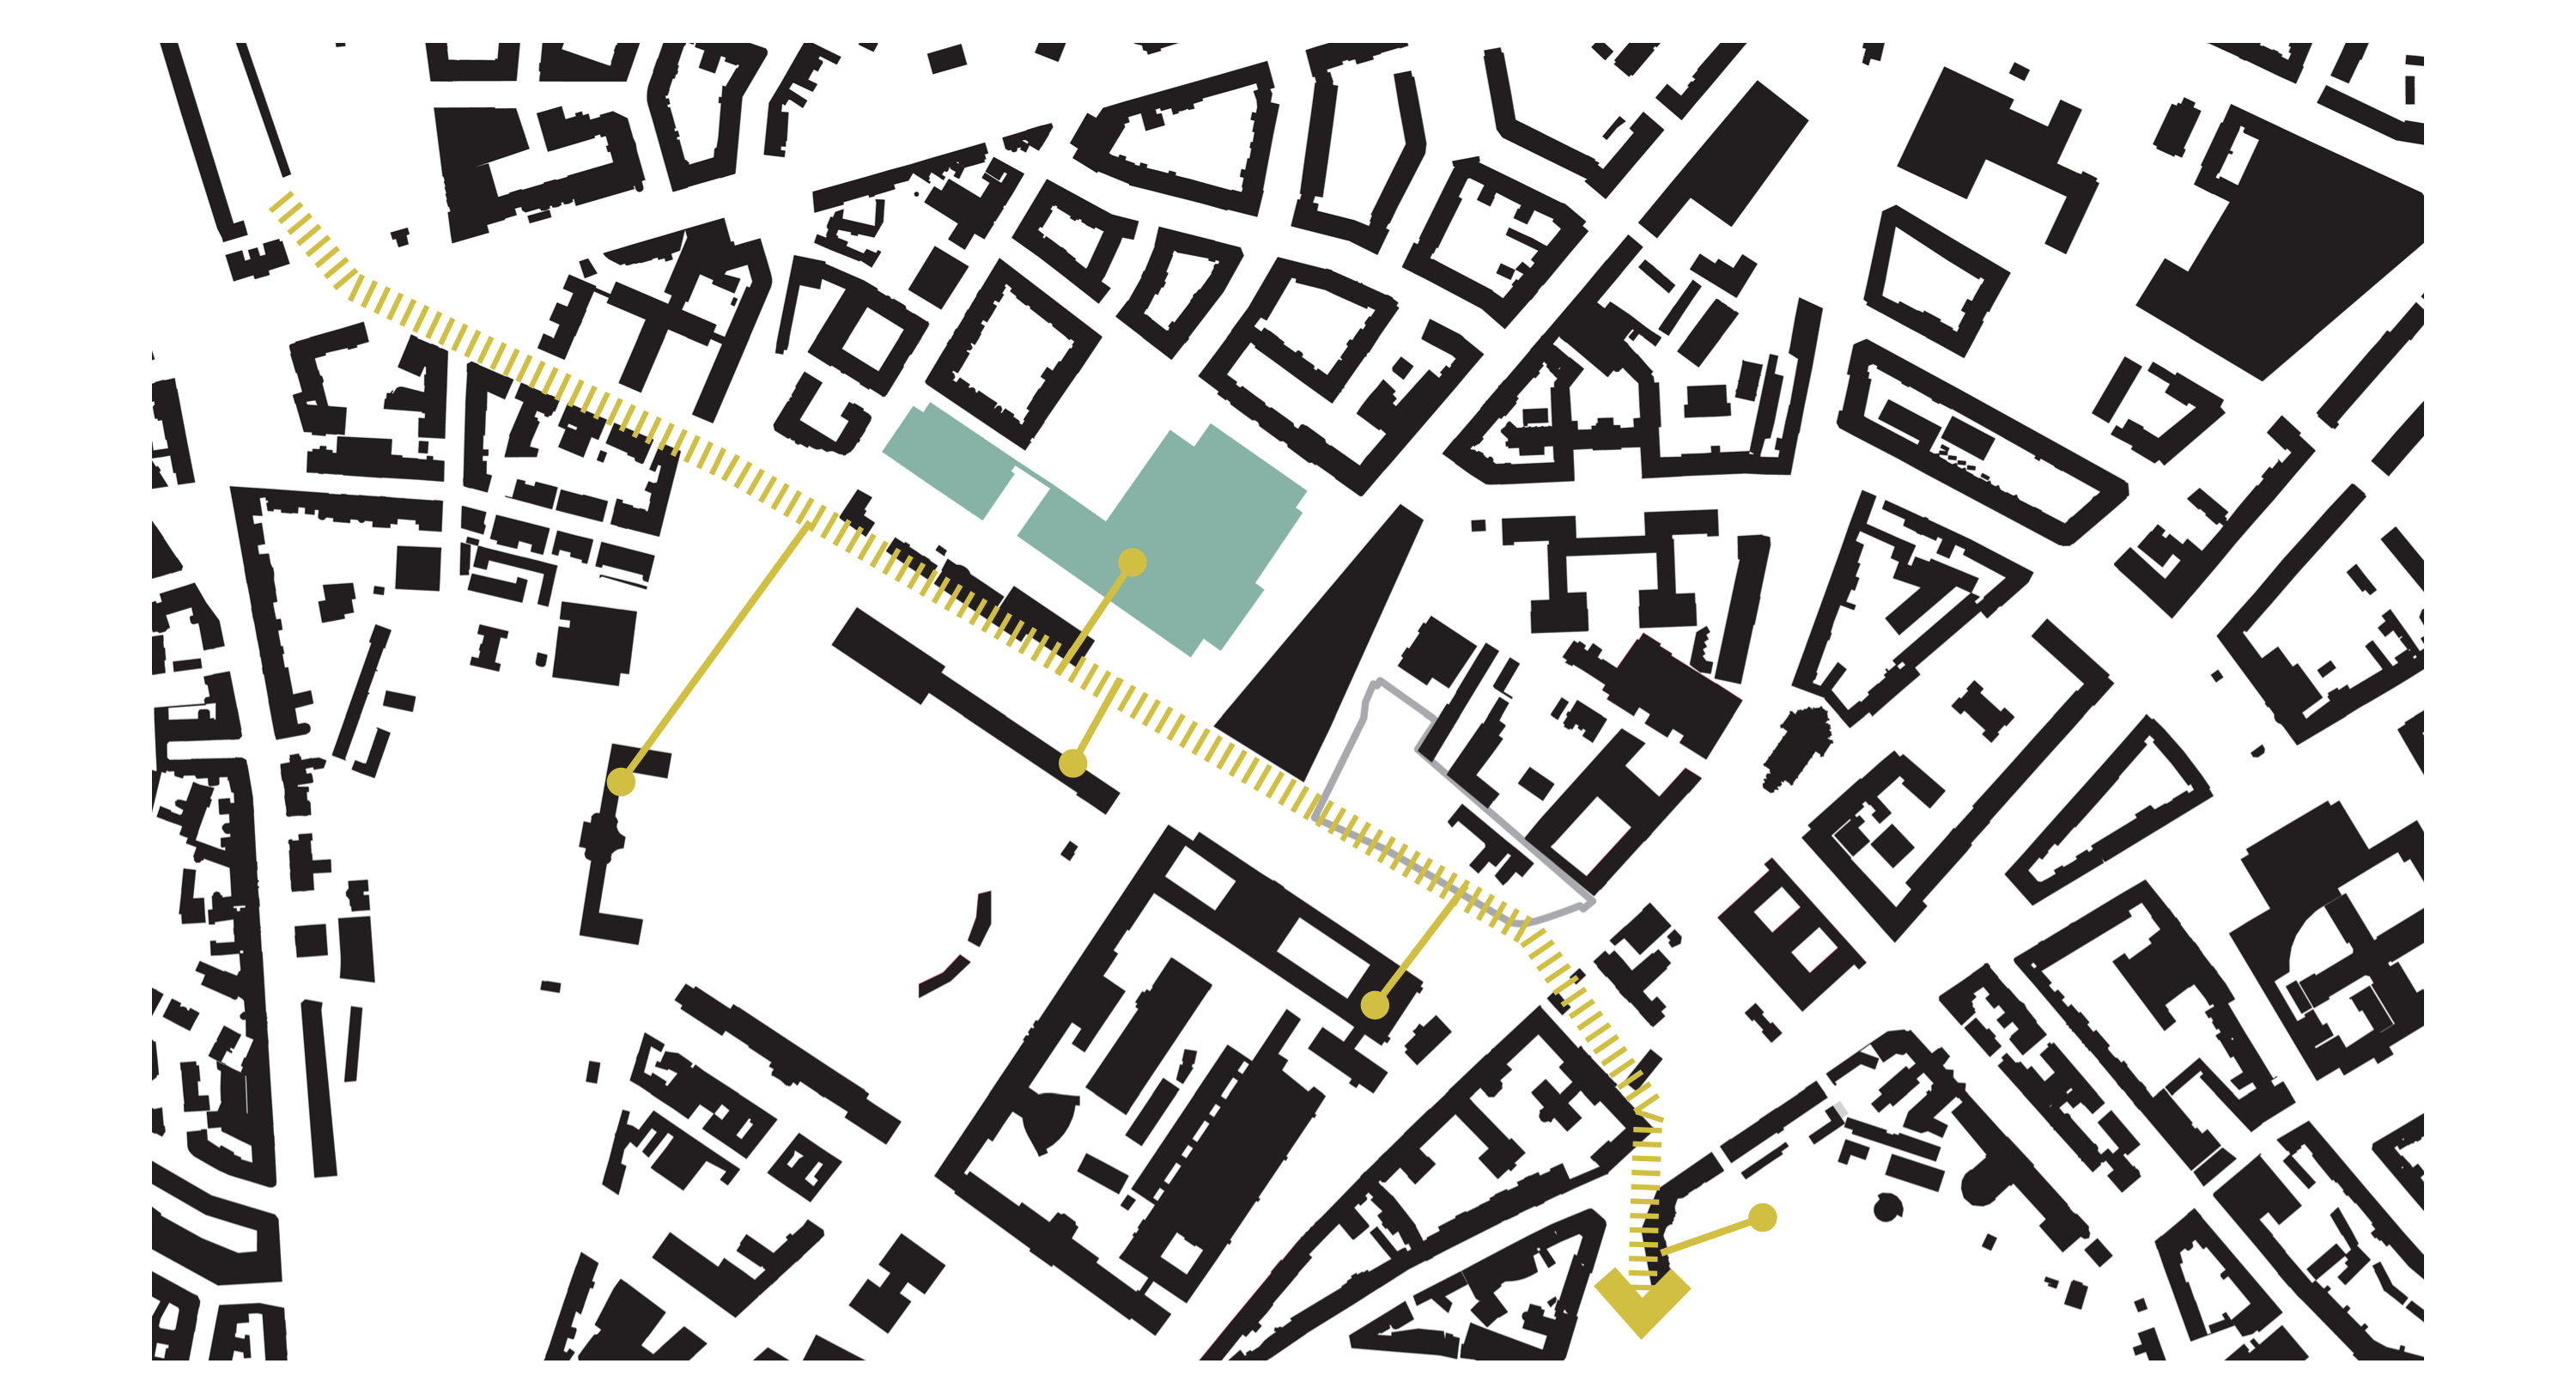 ŠIRŠIE VZŤAHY - zelená “priečna os”: sústava mestských priestorov s kultúrnou, spoločenskou, relaxačnou funkciou